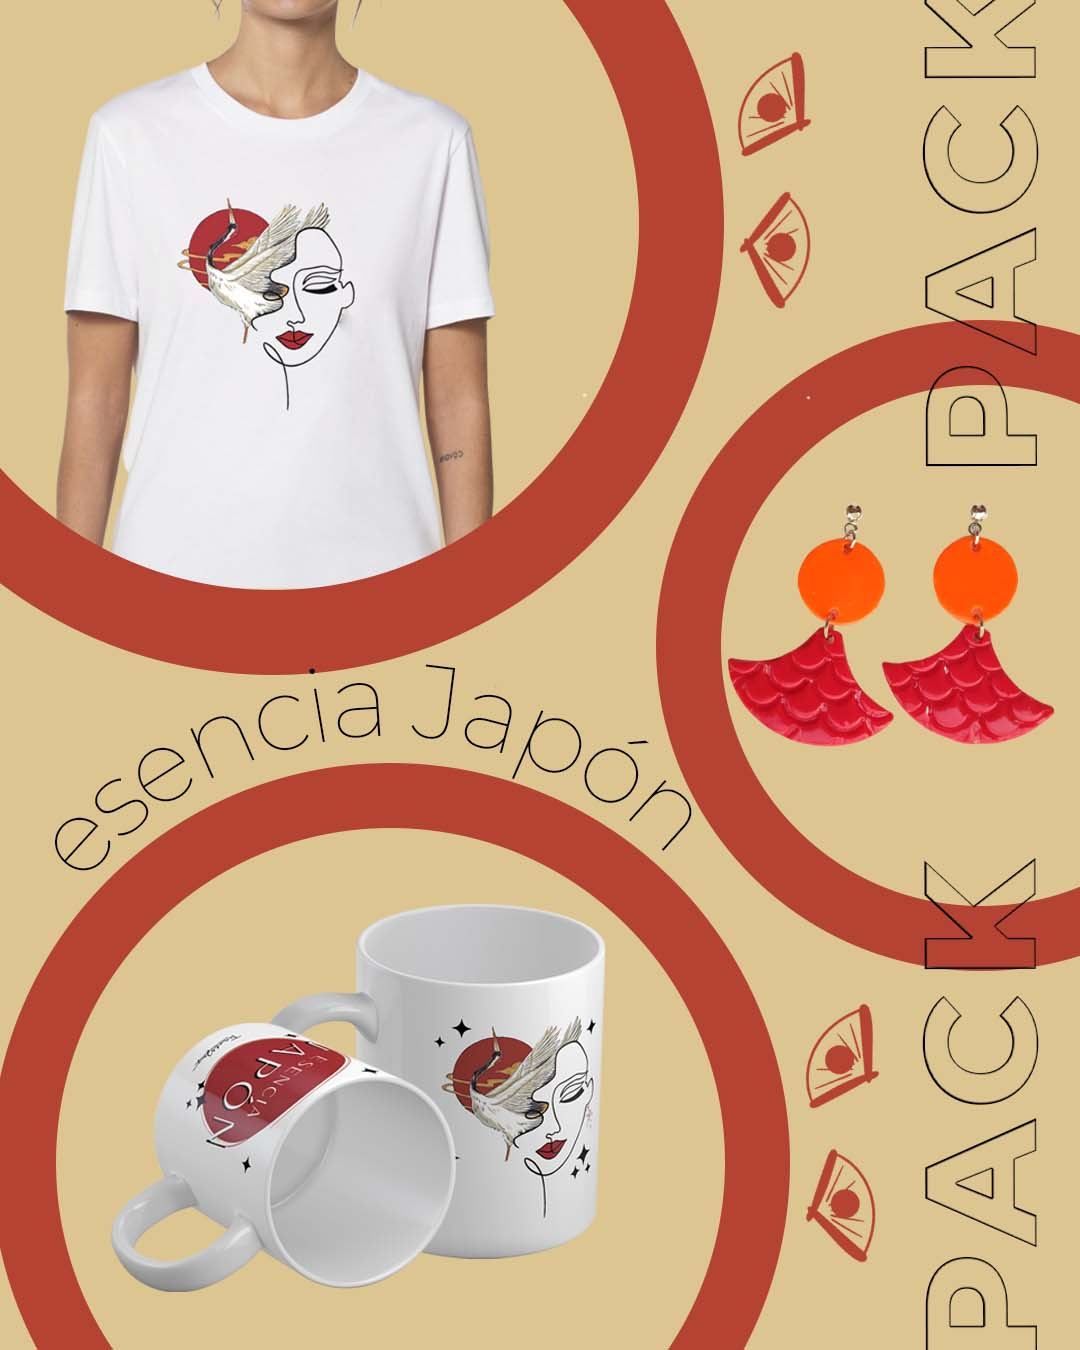 Oferta pack esencia Japón. Camisetas personalizadas con estampados de la esencia Japón con pendientes y tazas personalizadas